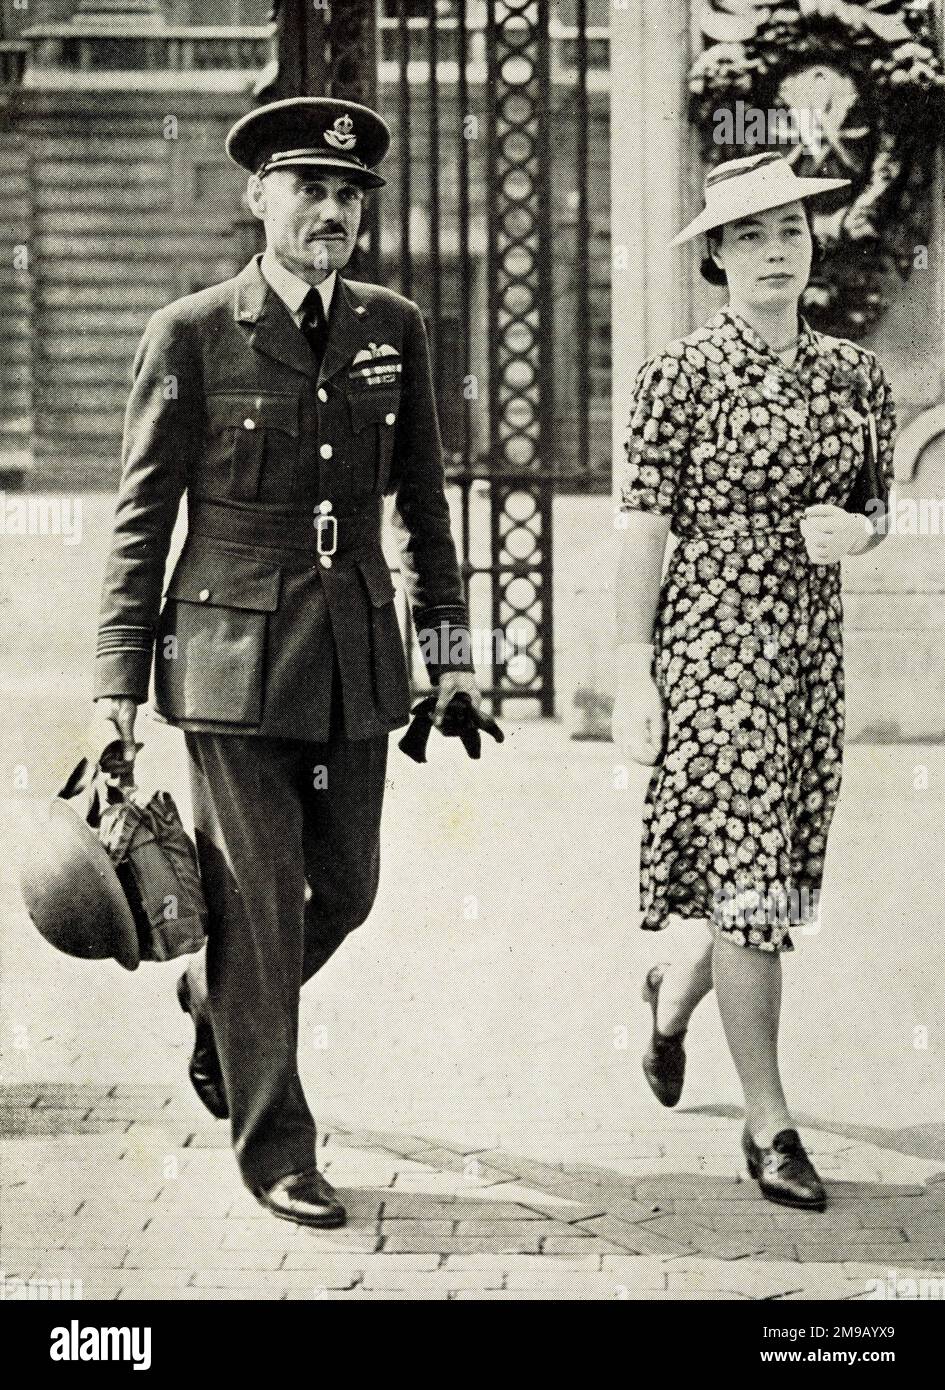 Chef de l’Escadron de la Force aérienne royale L.A. Étrange quittant Buckingham Palace après avoir été présenté au roi George VI pendant la Seconde Guerre mondiale. Banque D'Images